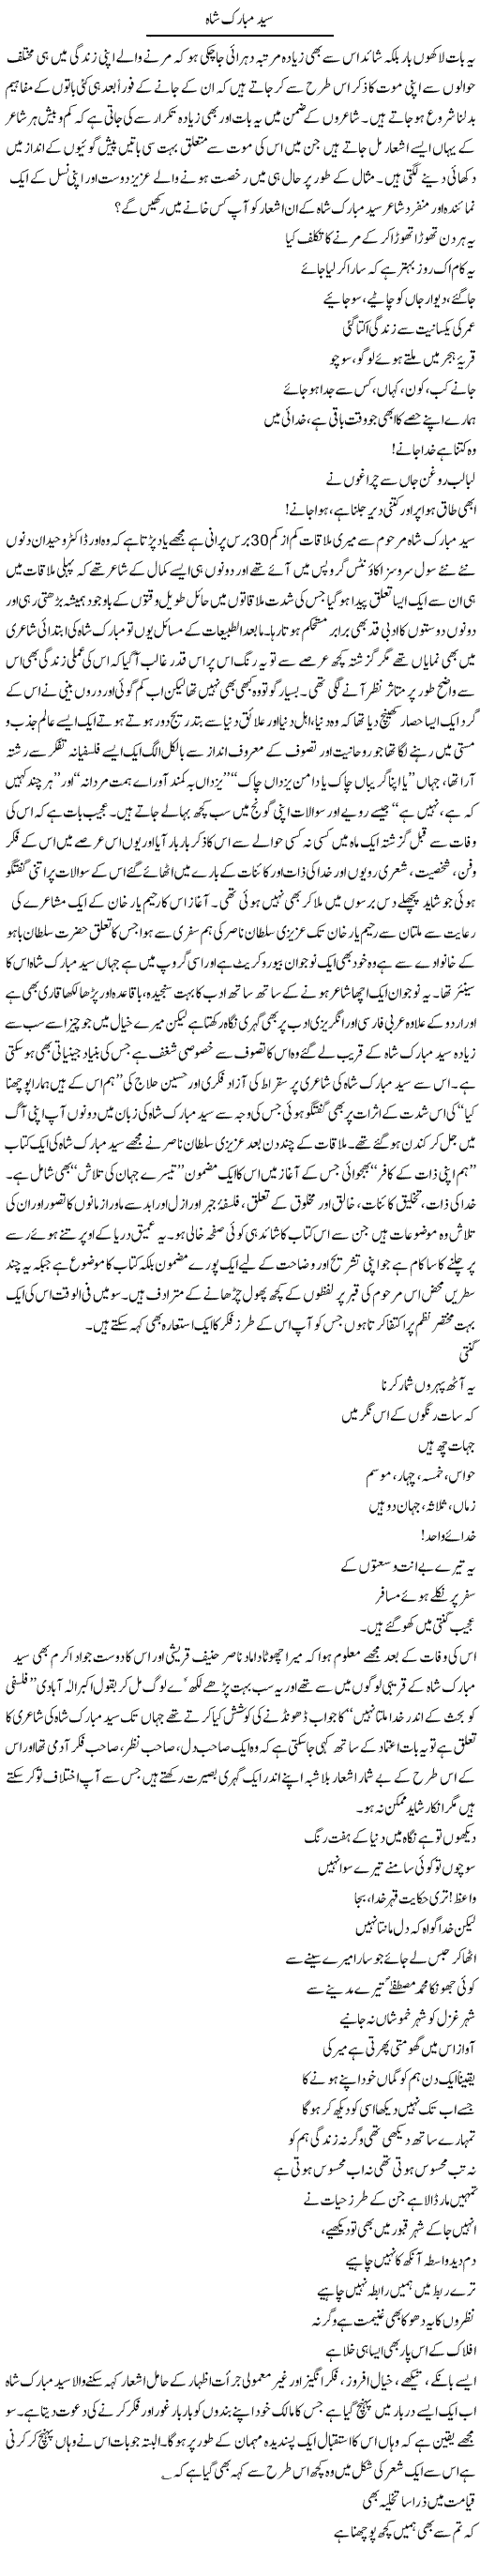 Syed Mubarak Shah | Amjad Islam Amjad | Daily Urdu Columns